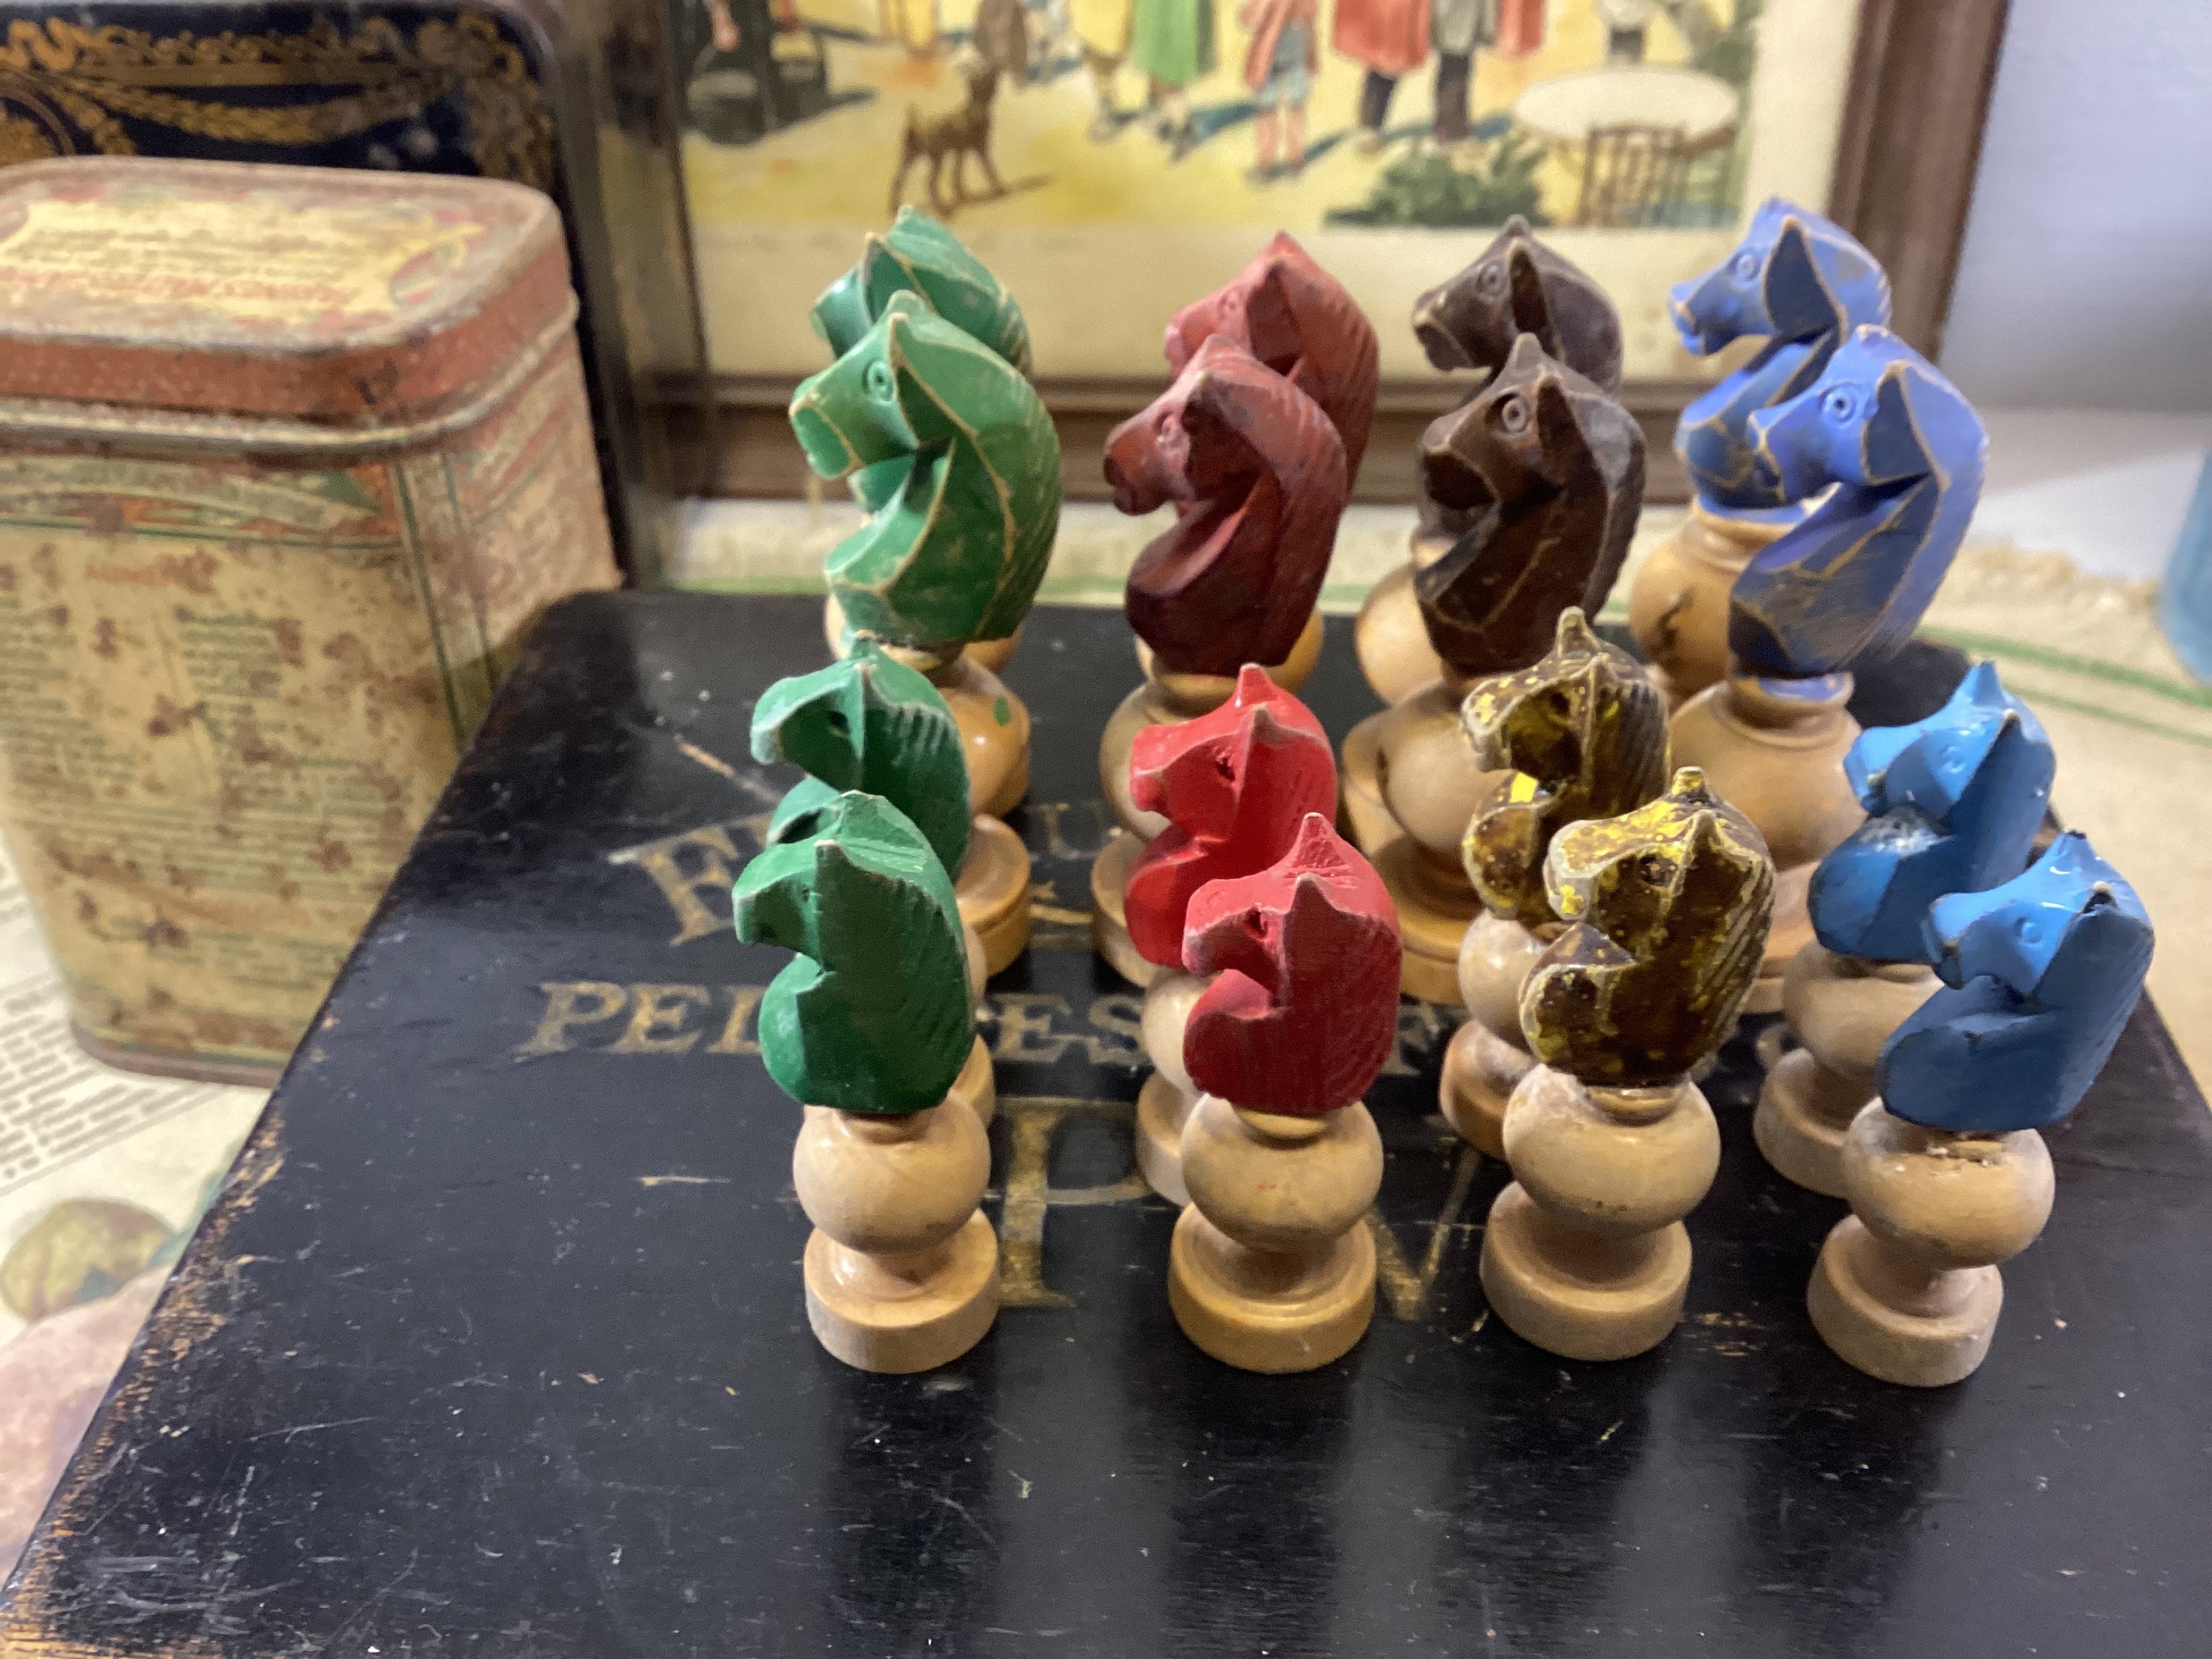 Plateau de jeux petits chevaux et jeu de l'oie Disney en bois - jouets  rétro jeux de société figurines et objets vintage